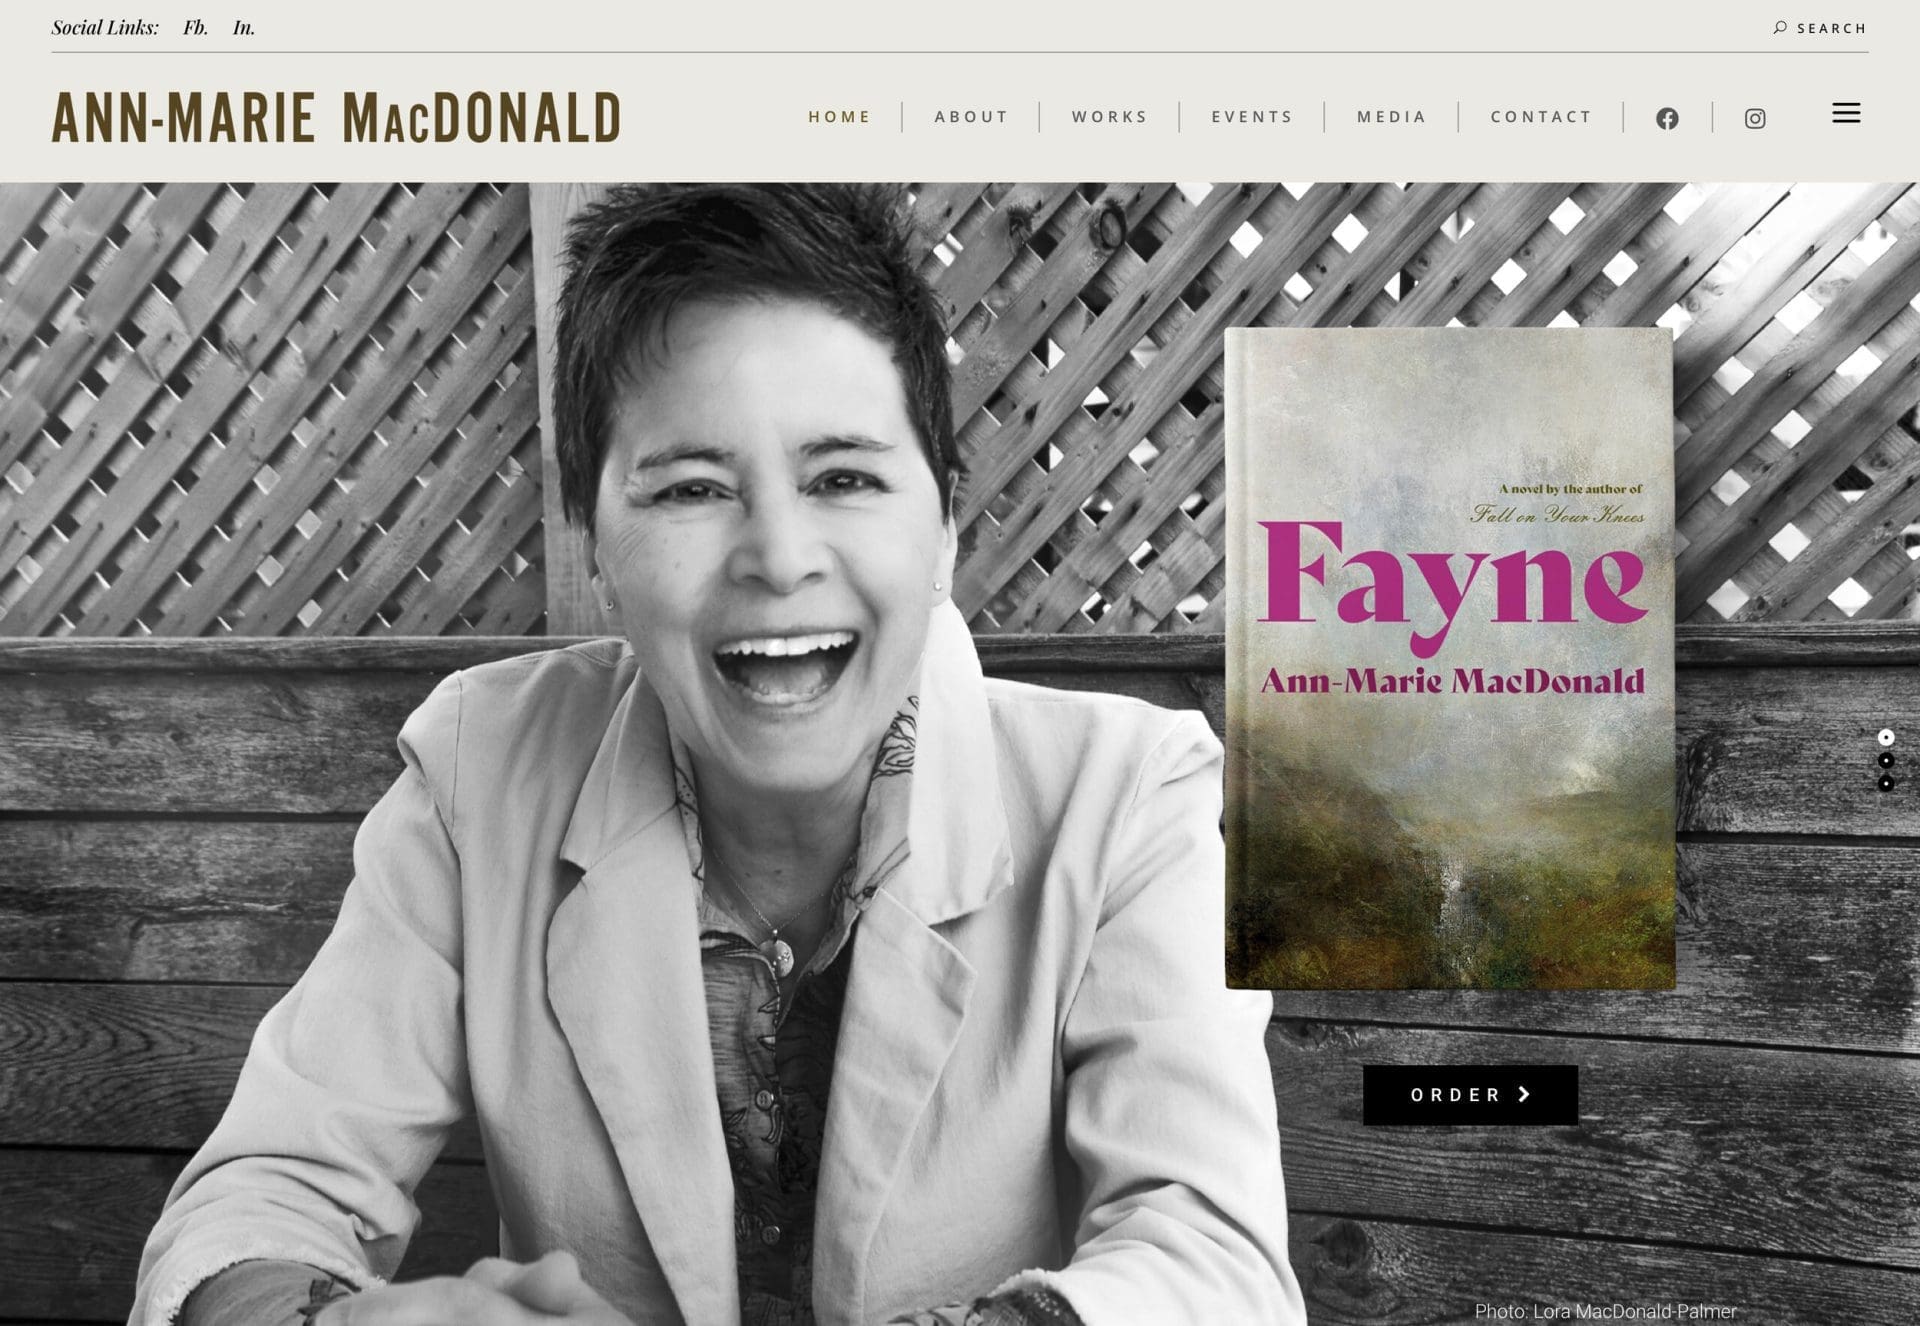 Ann-Marie MacDonald's website slide for her book Fayne